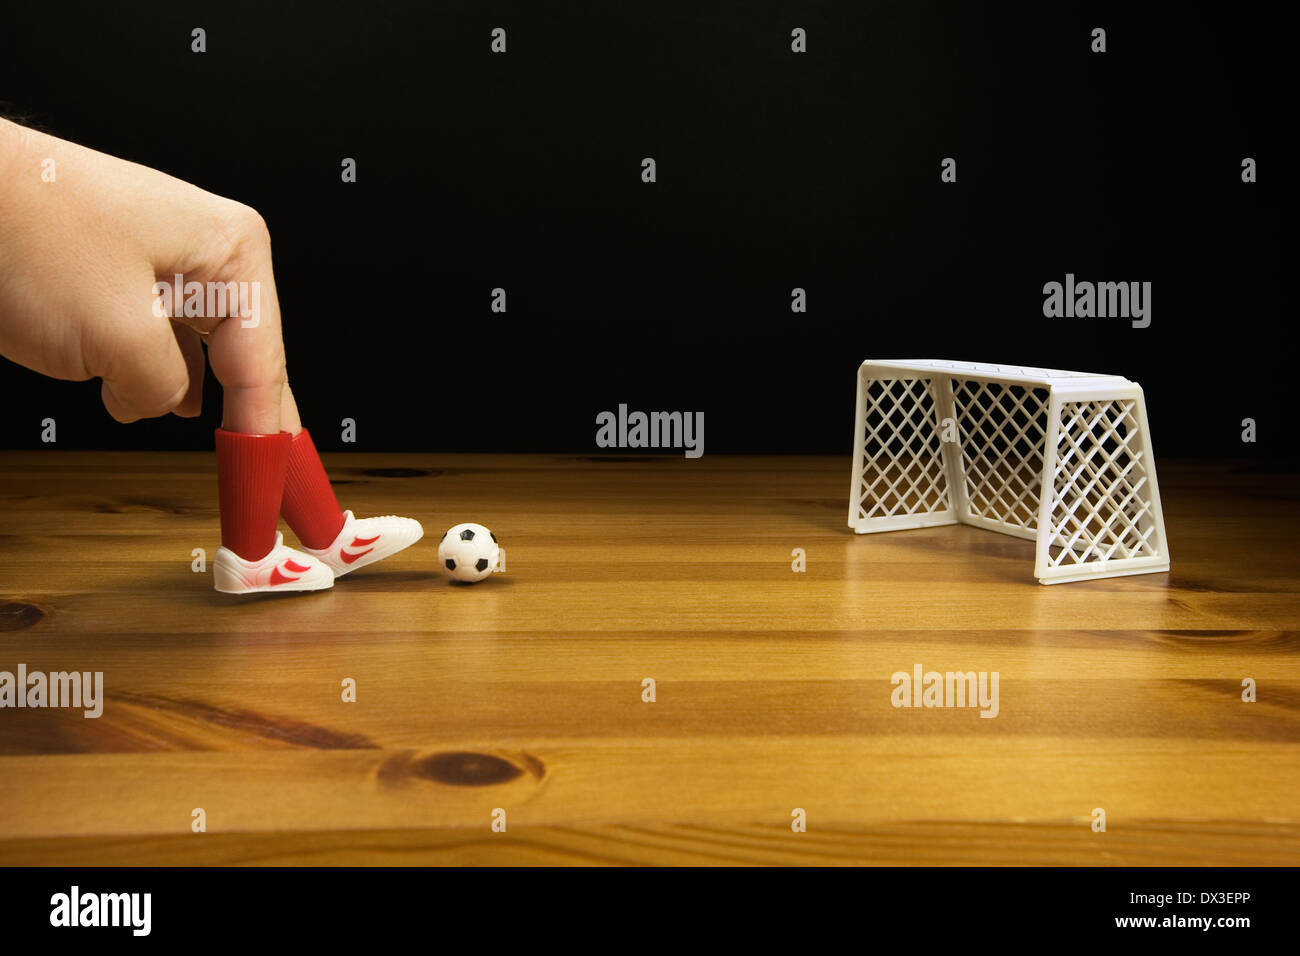 Les doigts d'une personne dans le plastique Chaussures de foot de table de jeu de football sur une table en bois, Banque D'Images